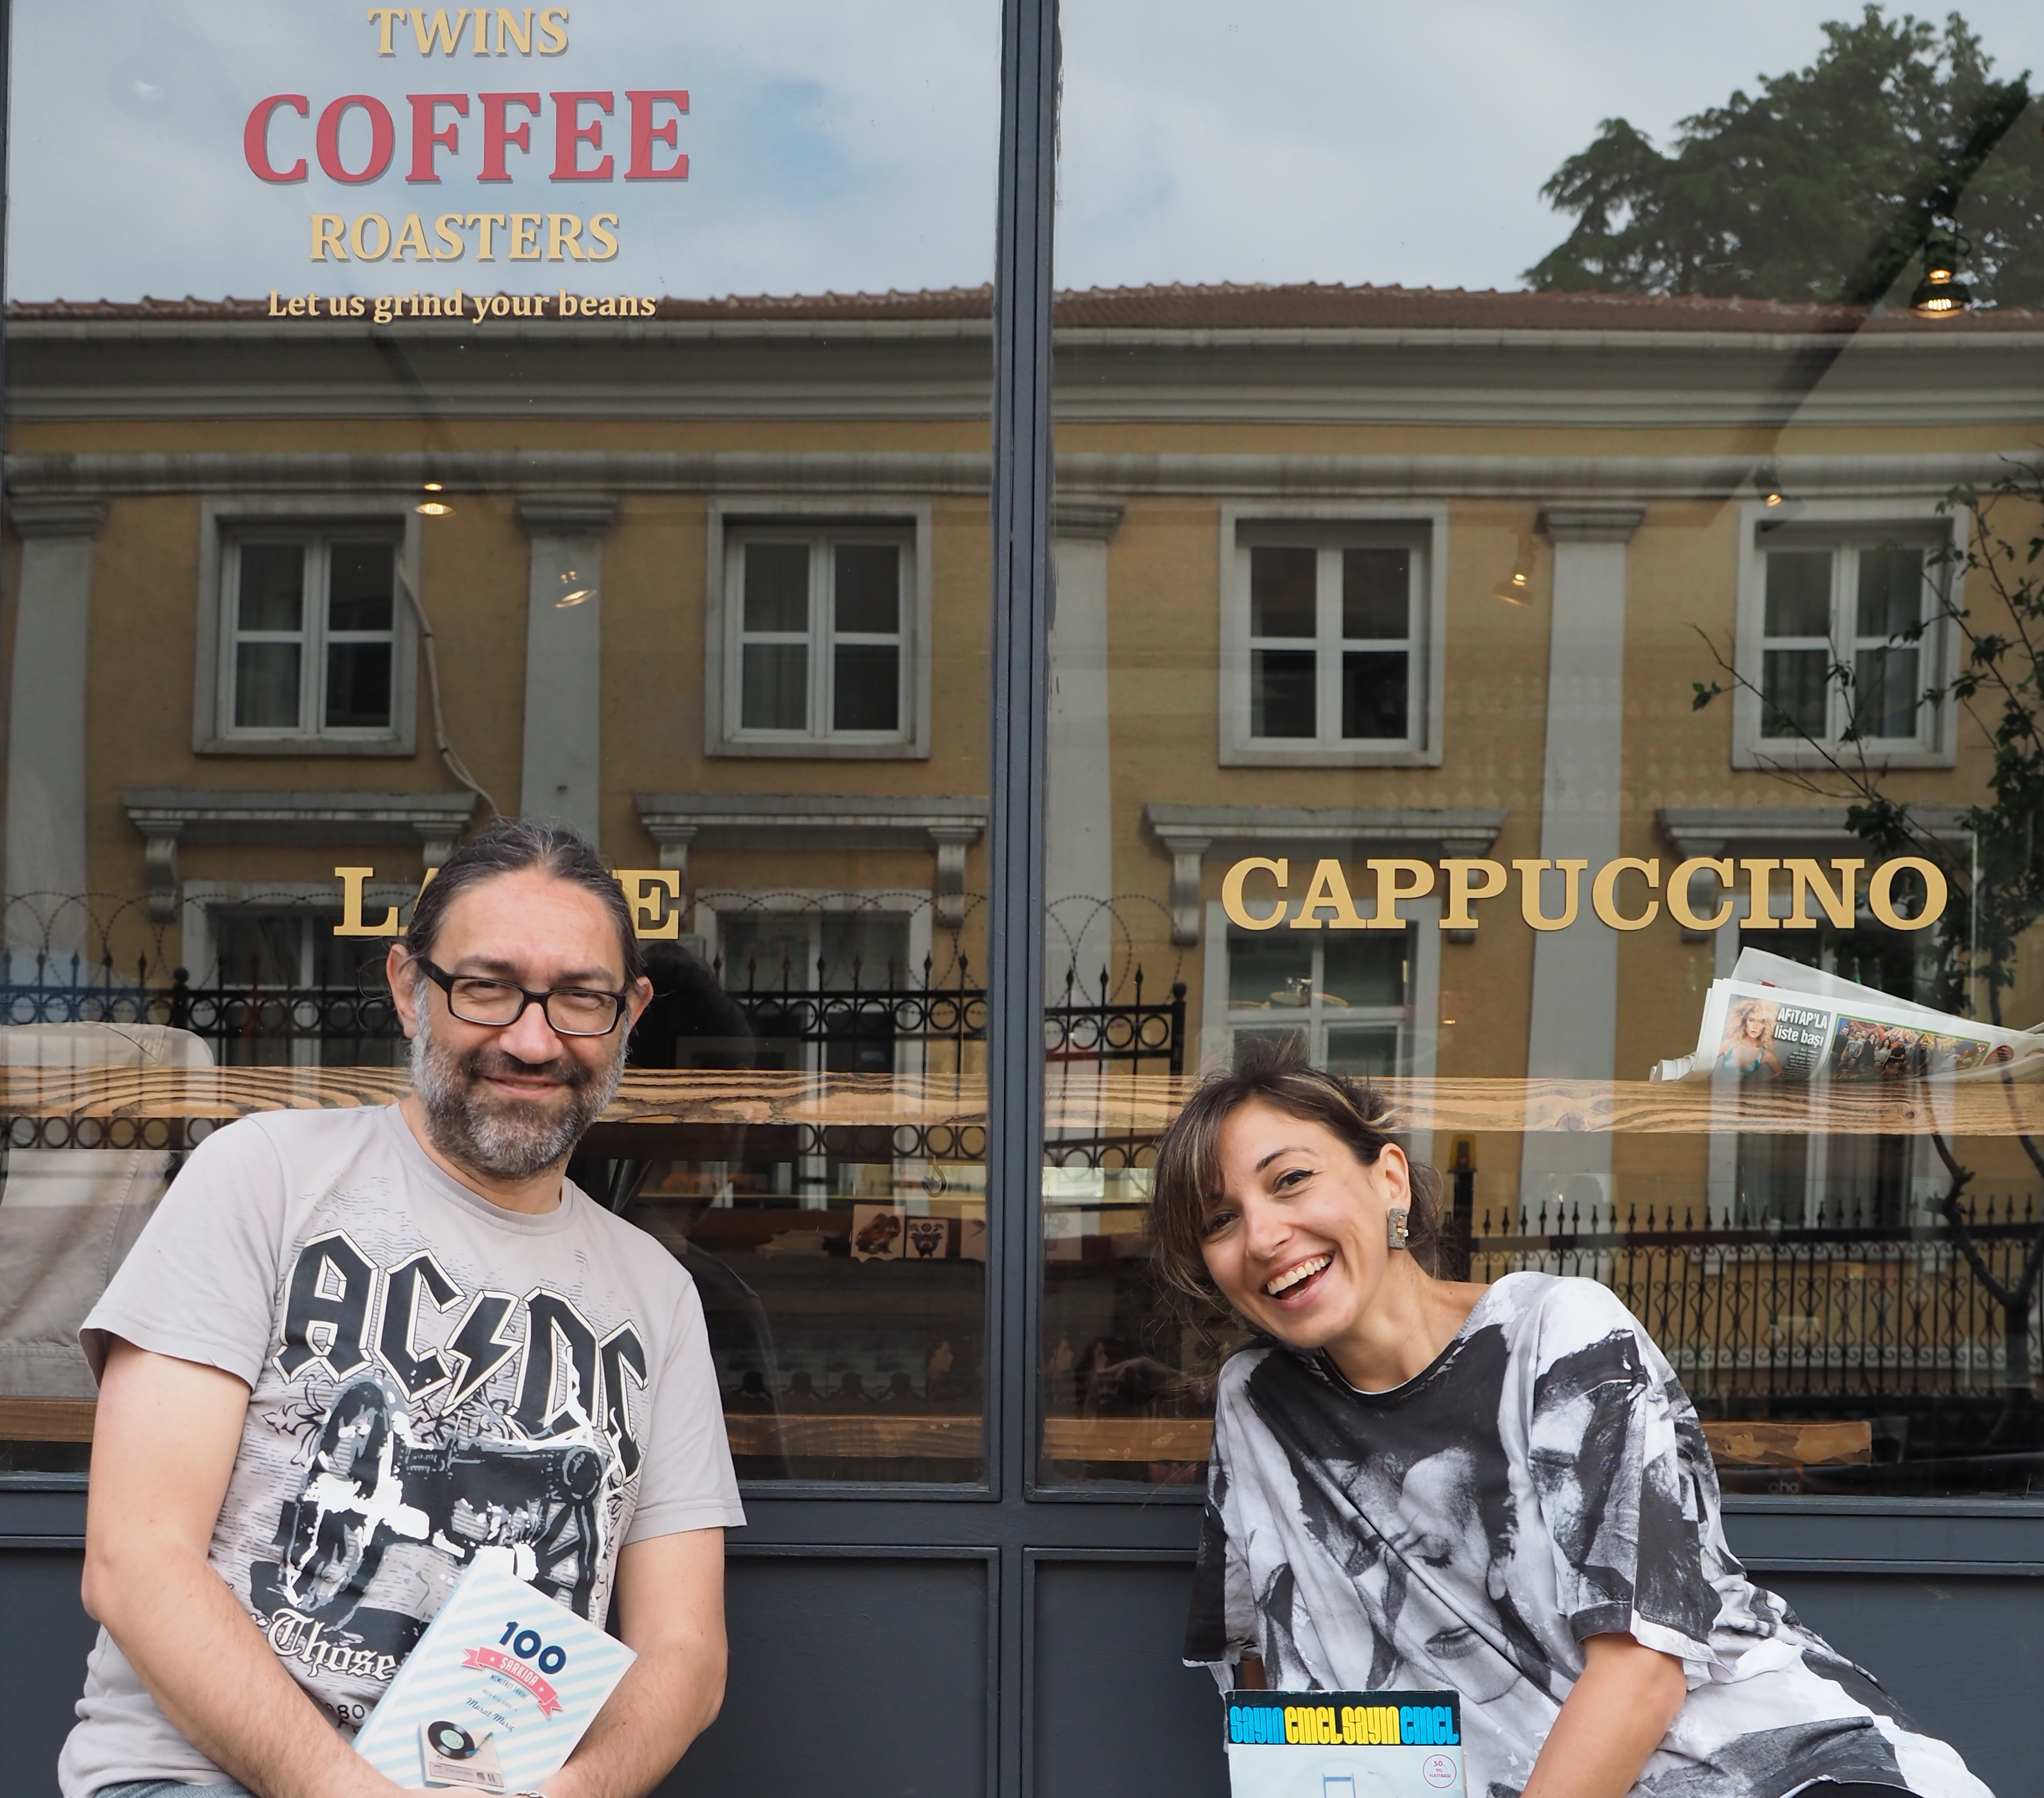 İstanbul'da, Ağaçkakan Yayınları'nın da semti Gümüşsuyu'nda, Twins Coffee Roasters'da buluştuk Murat Meriç'le. Tesadüf, o, AC DC ben, David Bowie tişörtlerimizle konuştuk:) Fotoğraf: SİNAN HAMAMSARILAR